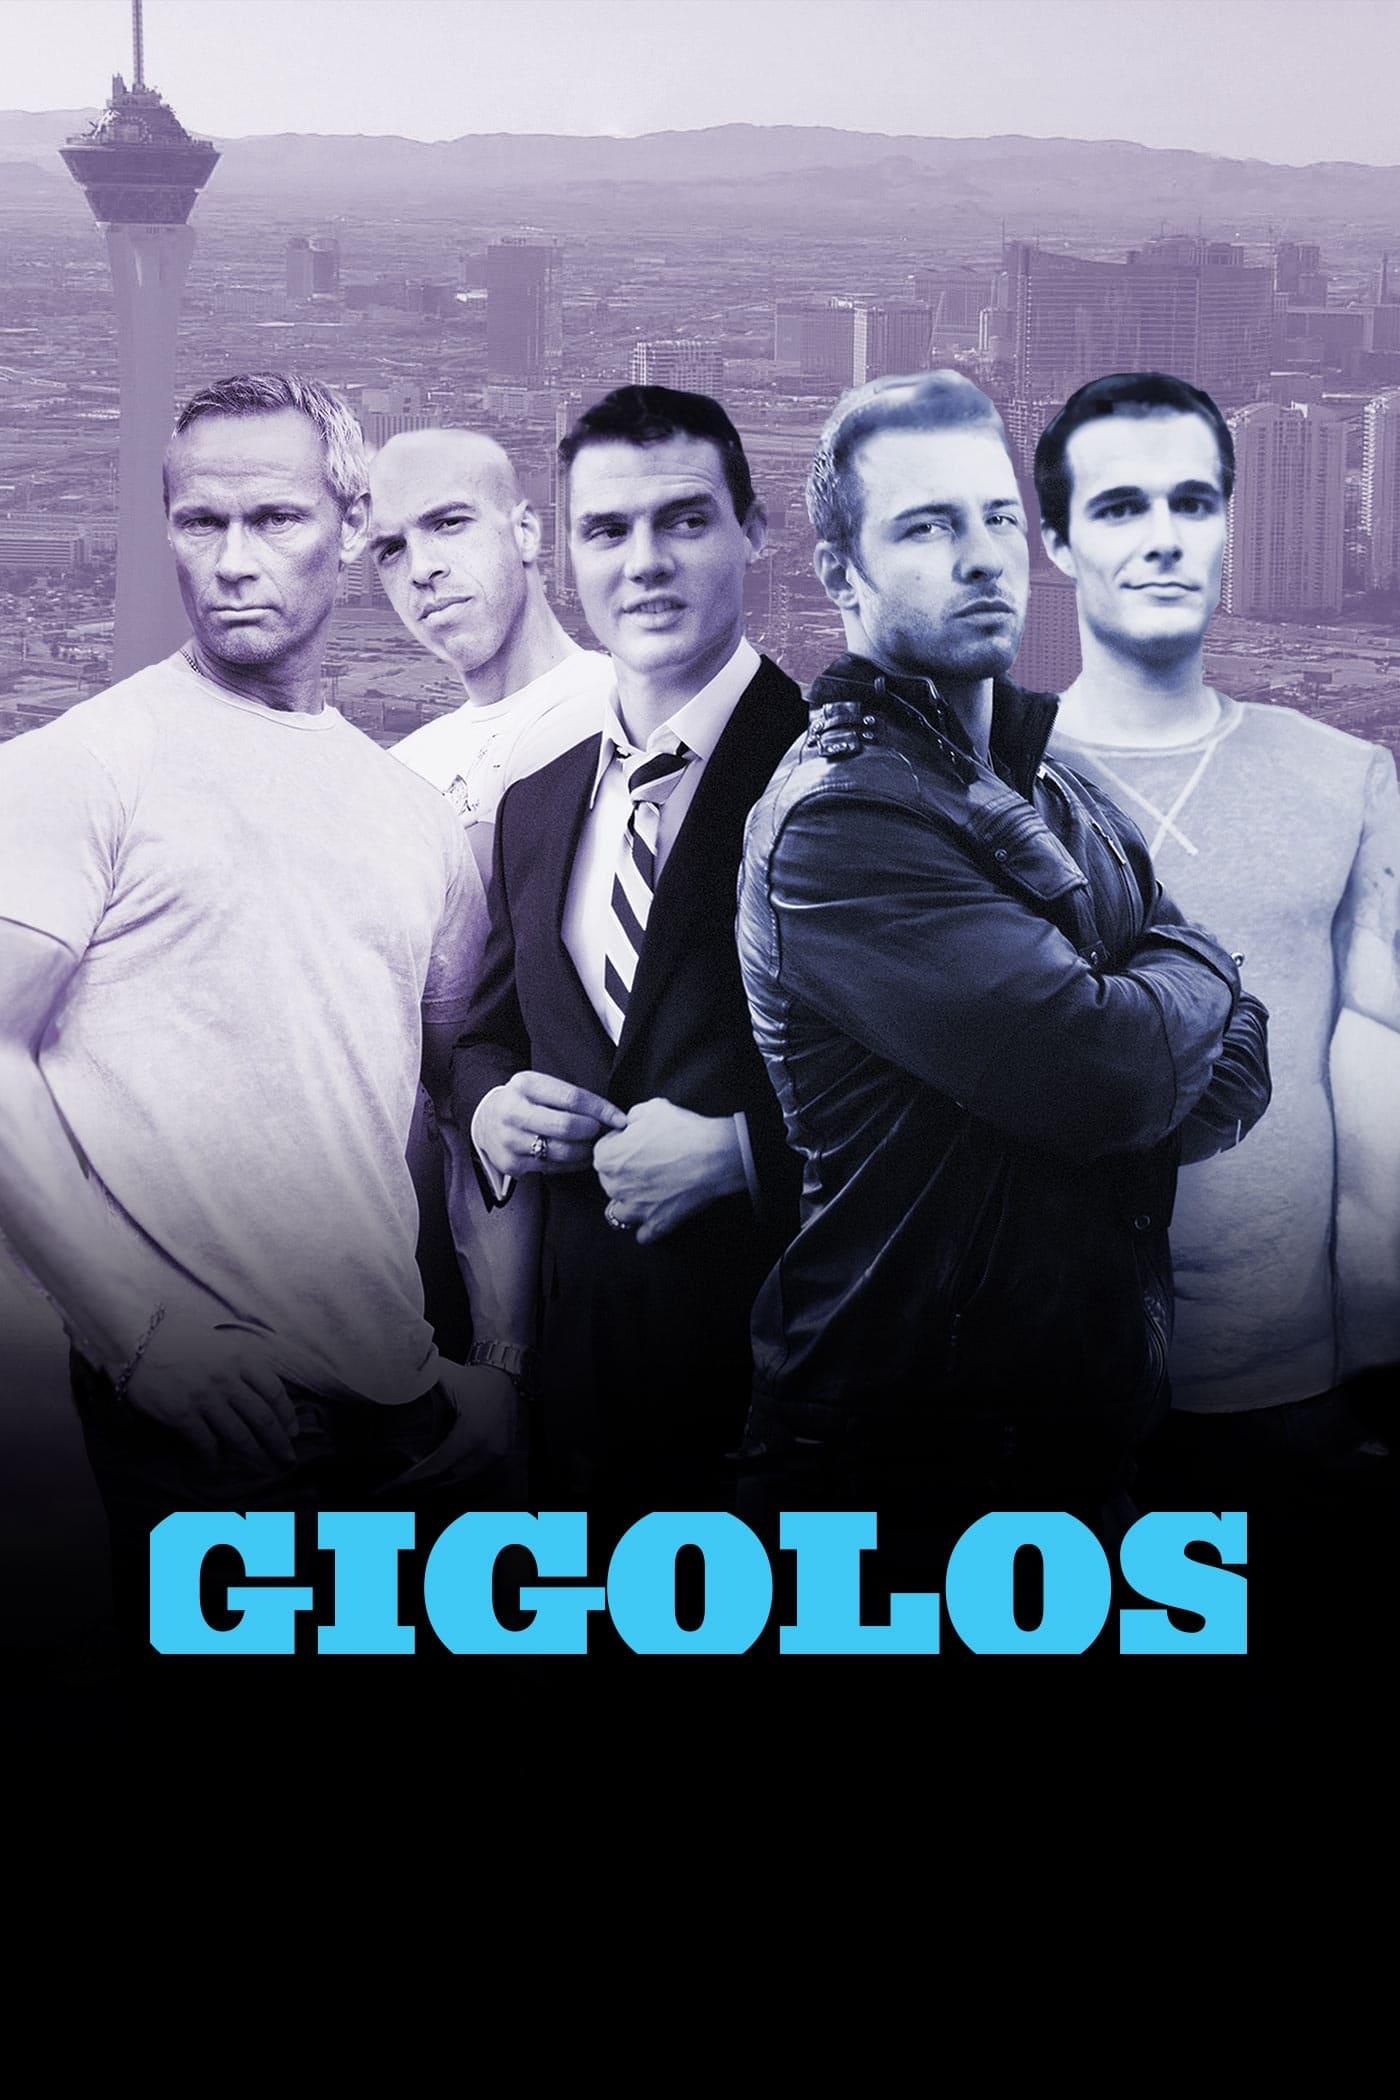 Gigolos poster